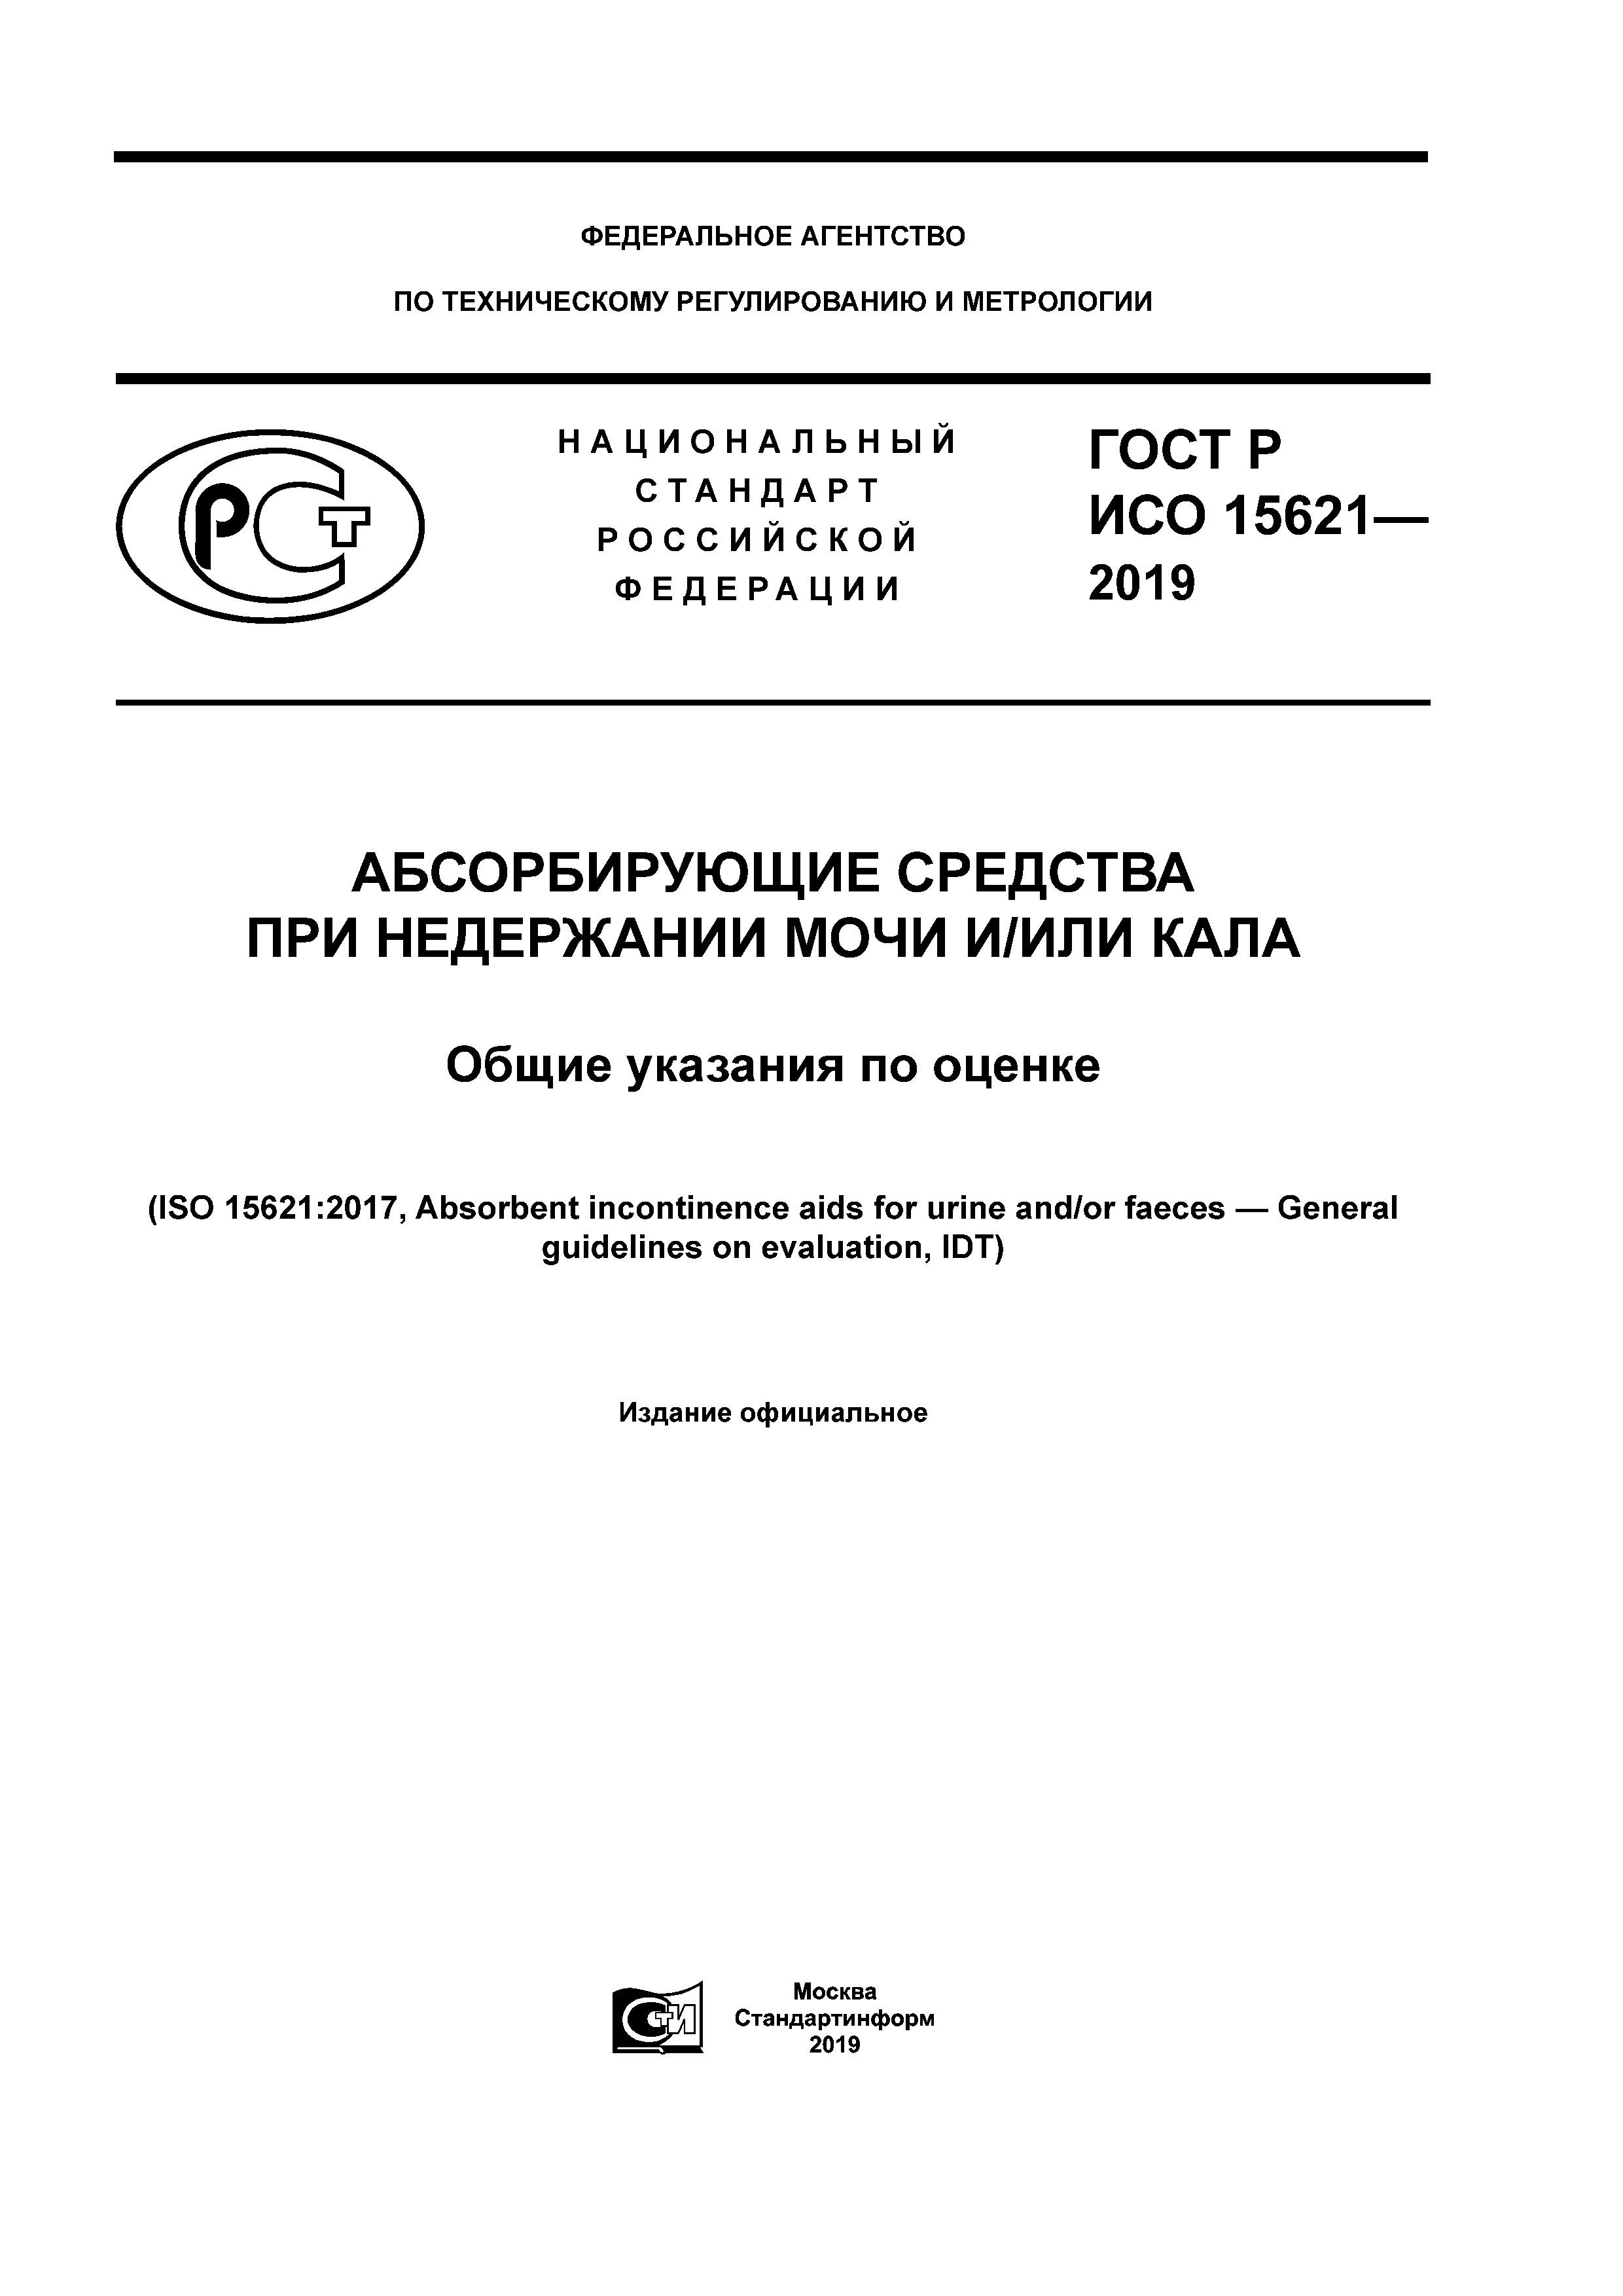 ГОСТ Р ИСО 15621-2019